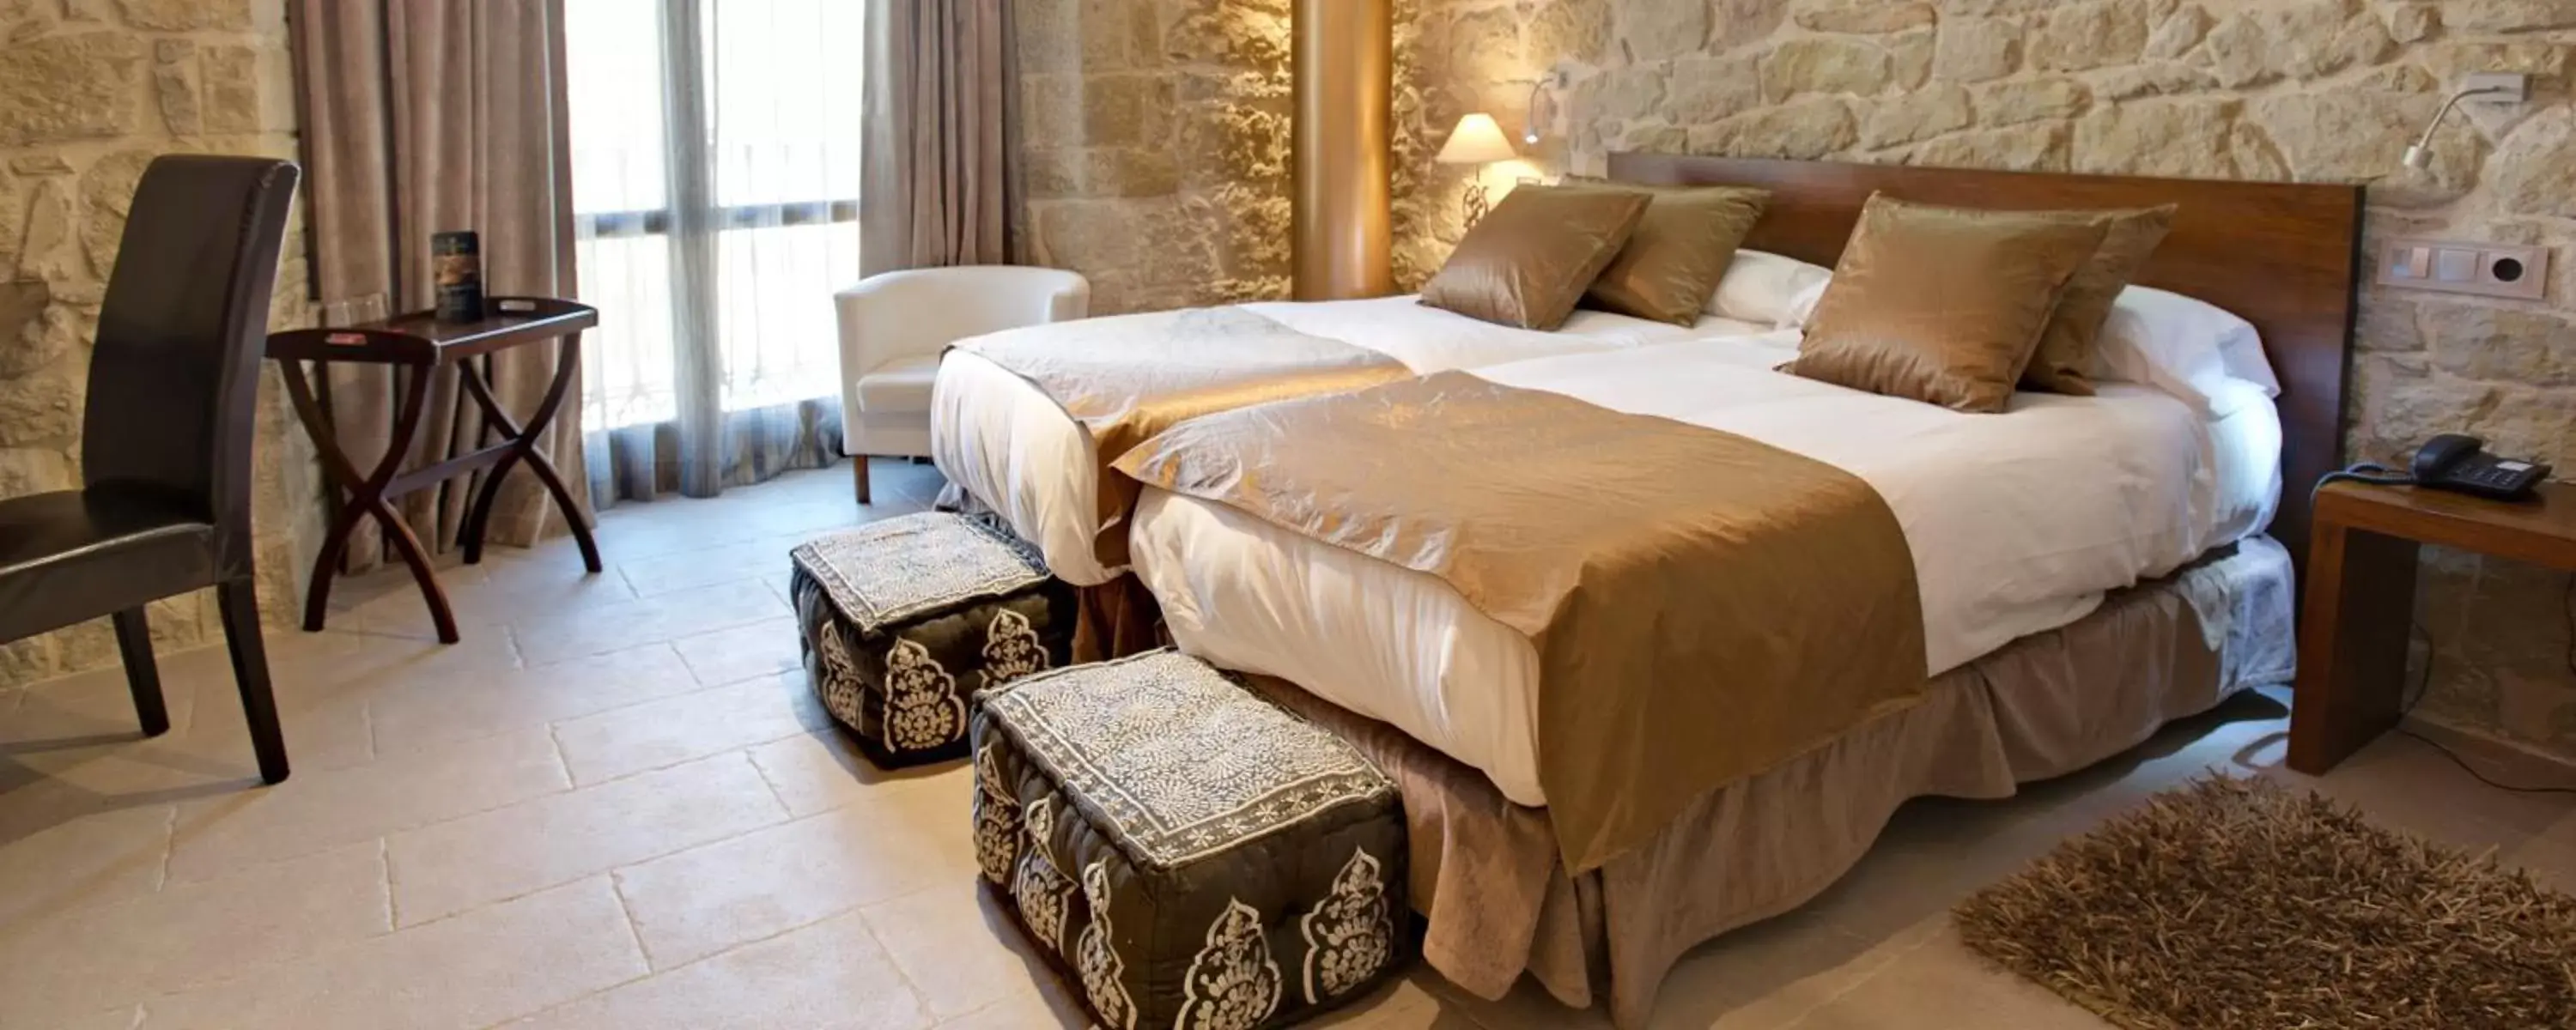 Bed in Hotel Palacio del Obispo